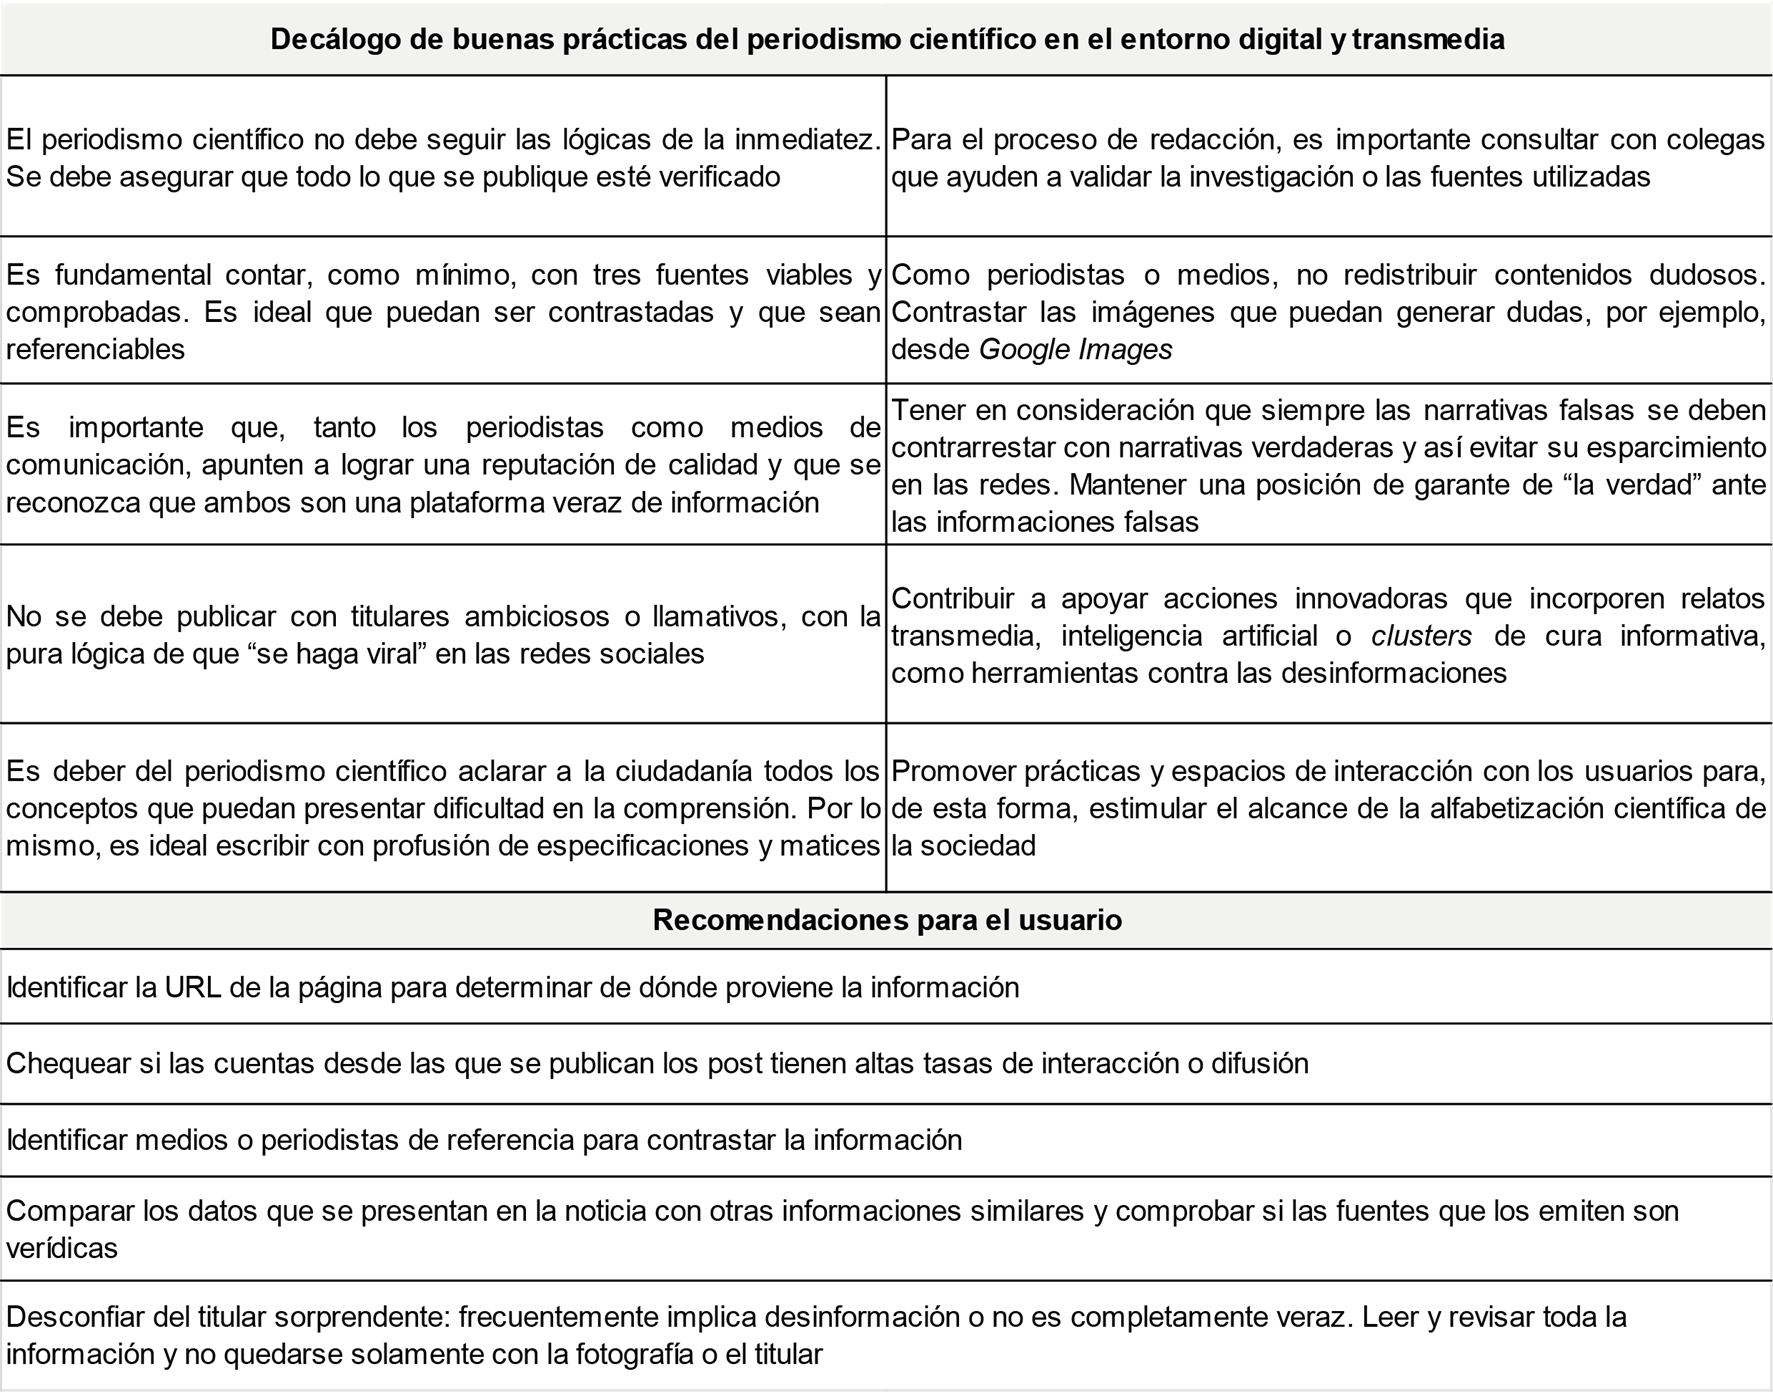 Resumen de las recomendaciones para el desarrollo del periodismo científico en el entorno digital